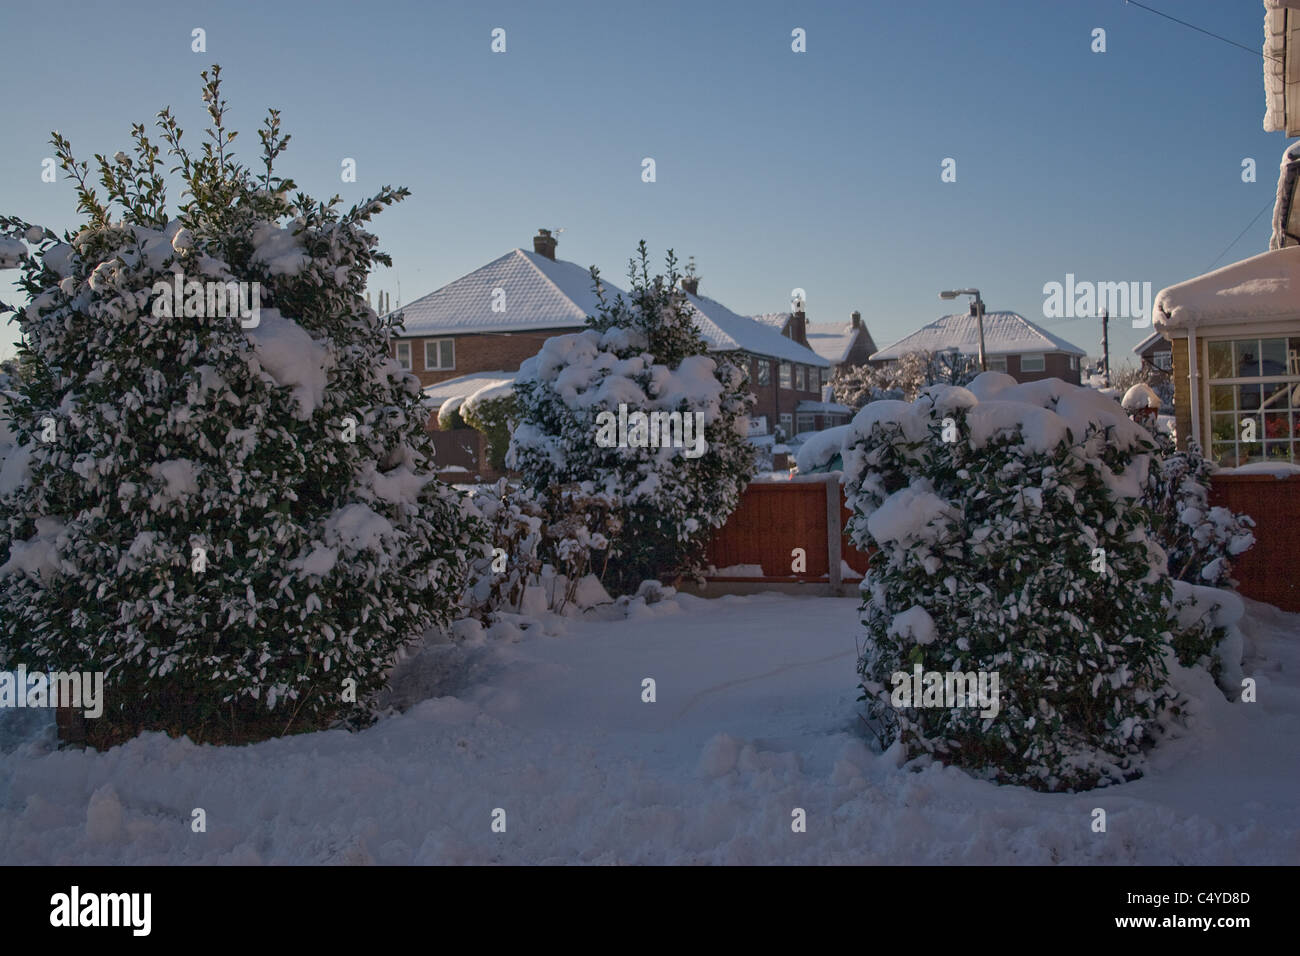 Le jardin couvert de neige, arbres, toits, bleu ciel. Banque D'Images